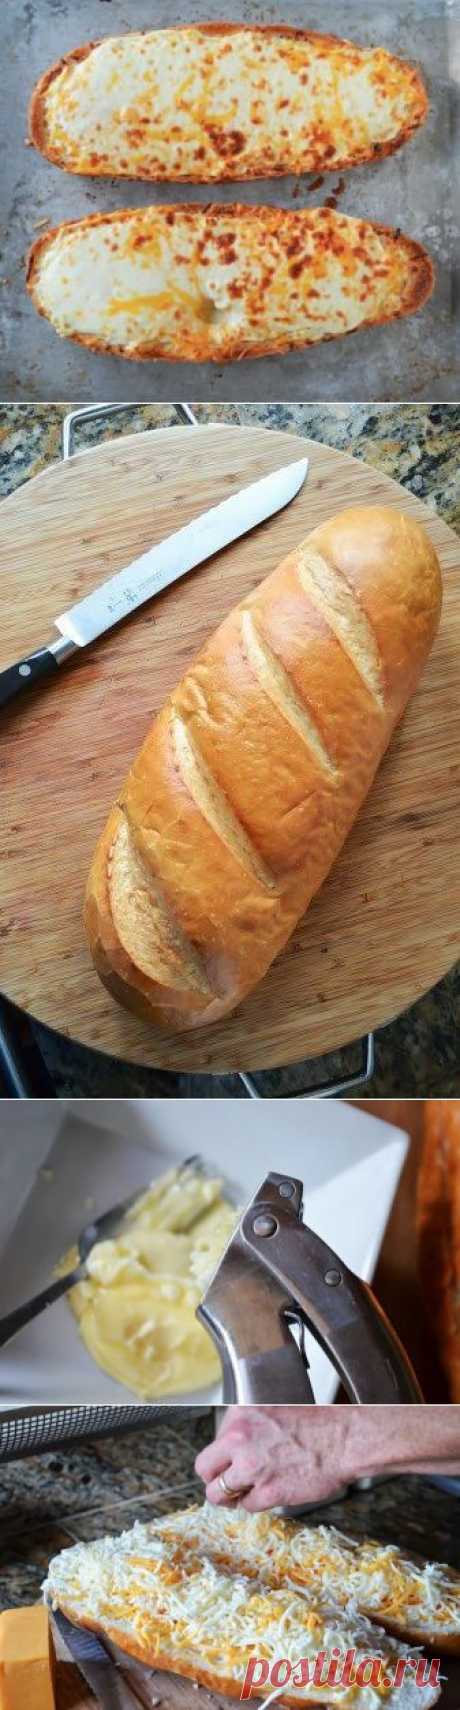 Как приготовить чесночный хлеб с сыром - рецепт, ингридиенты и фотографии